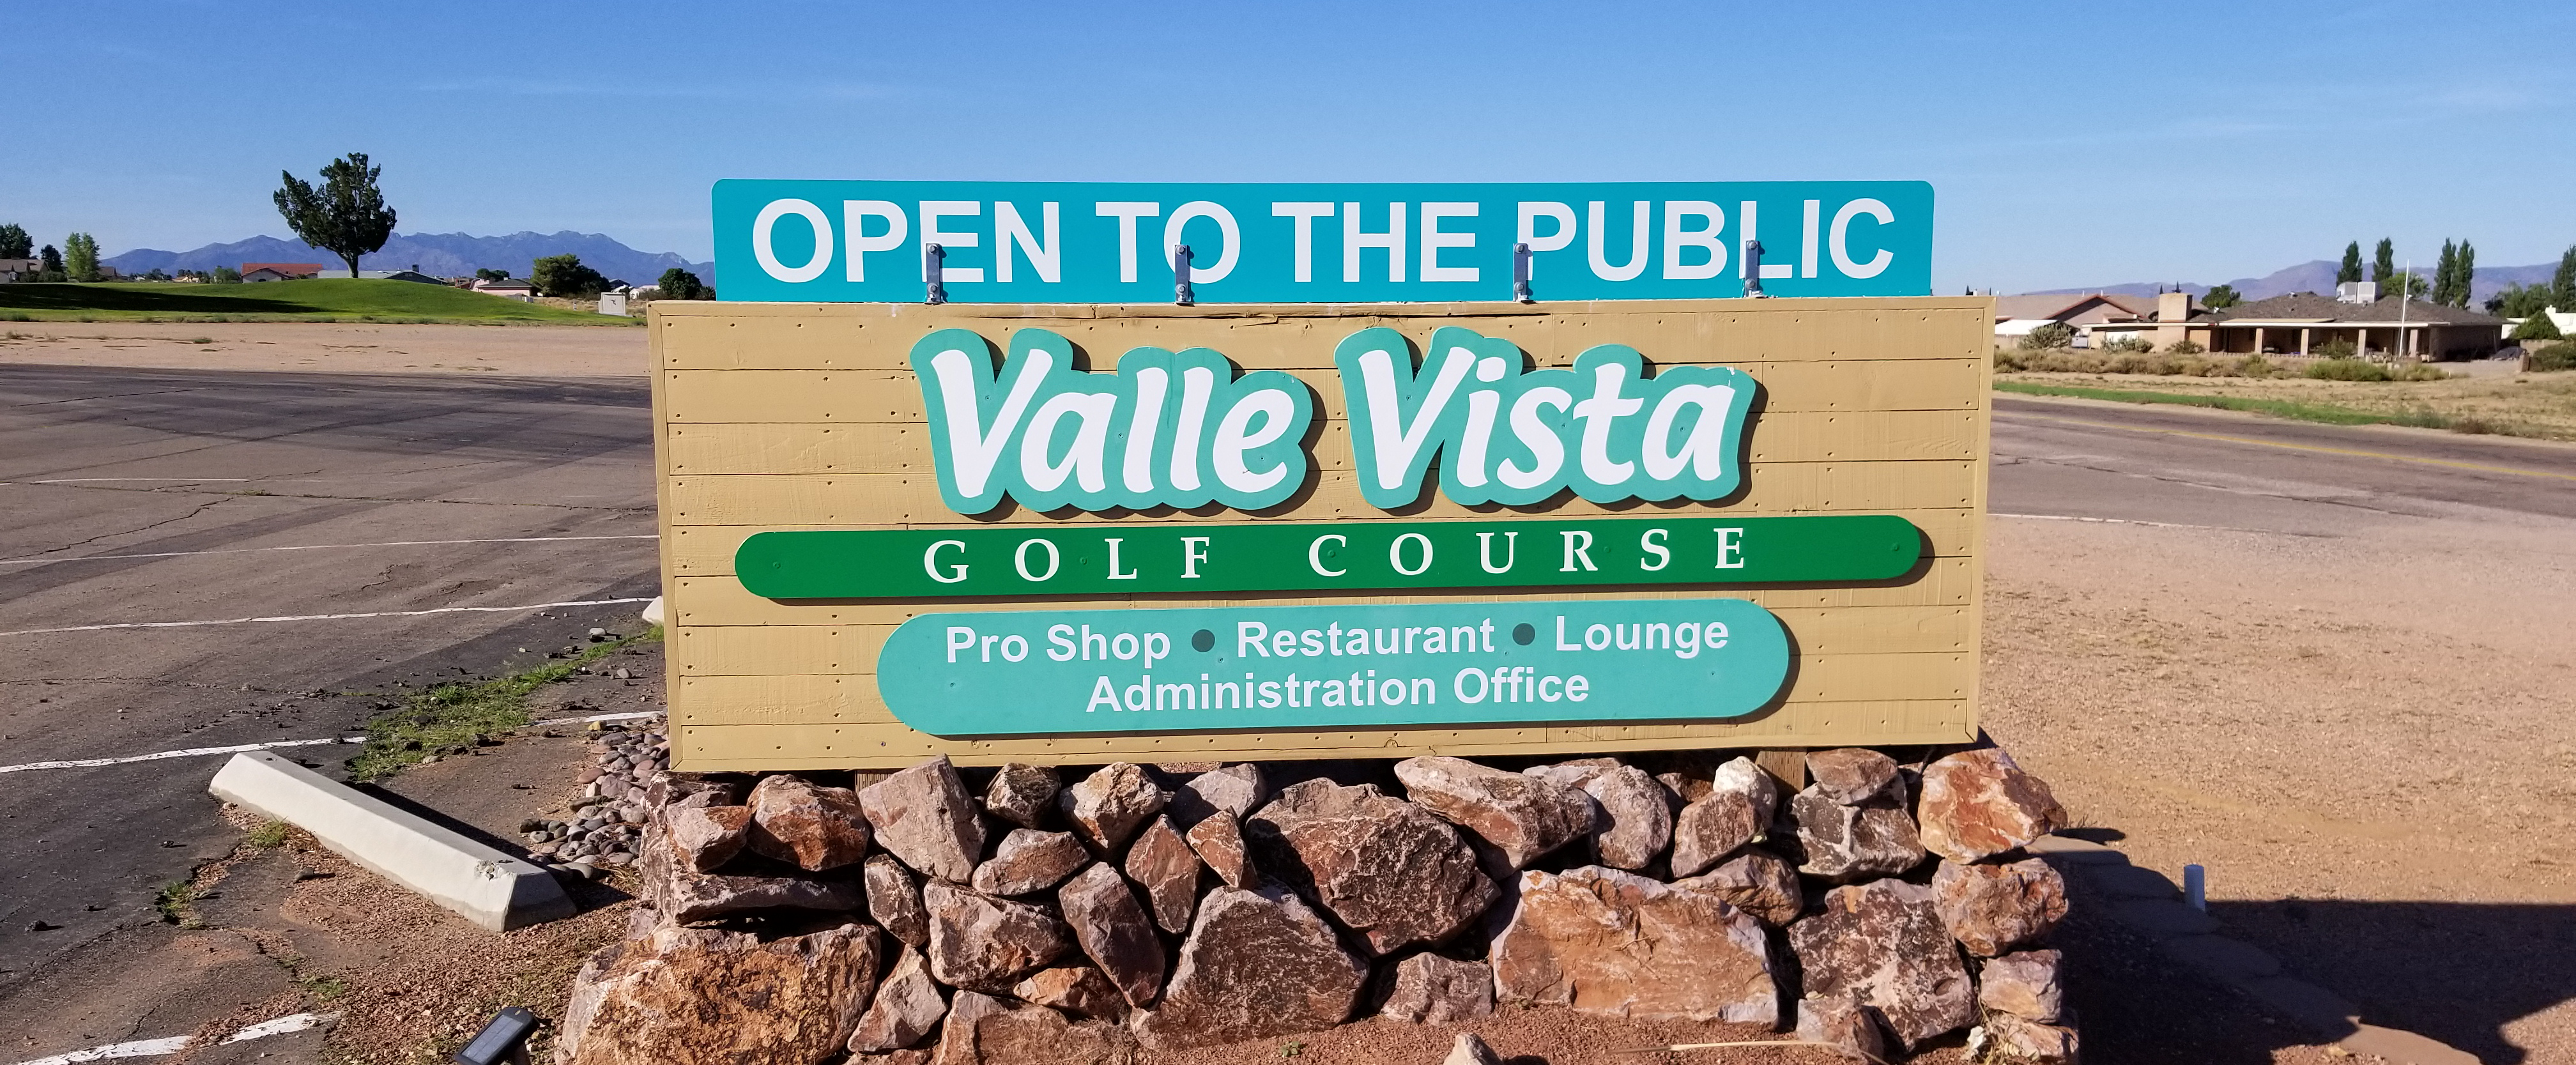 Valle Vista Golf